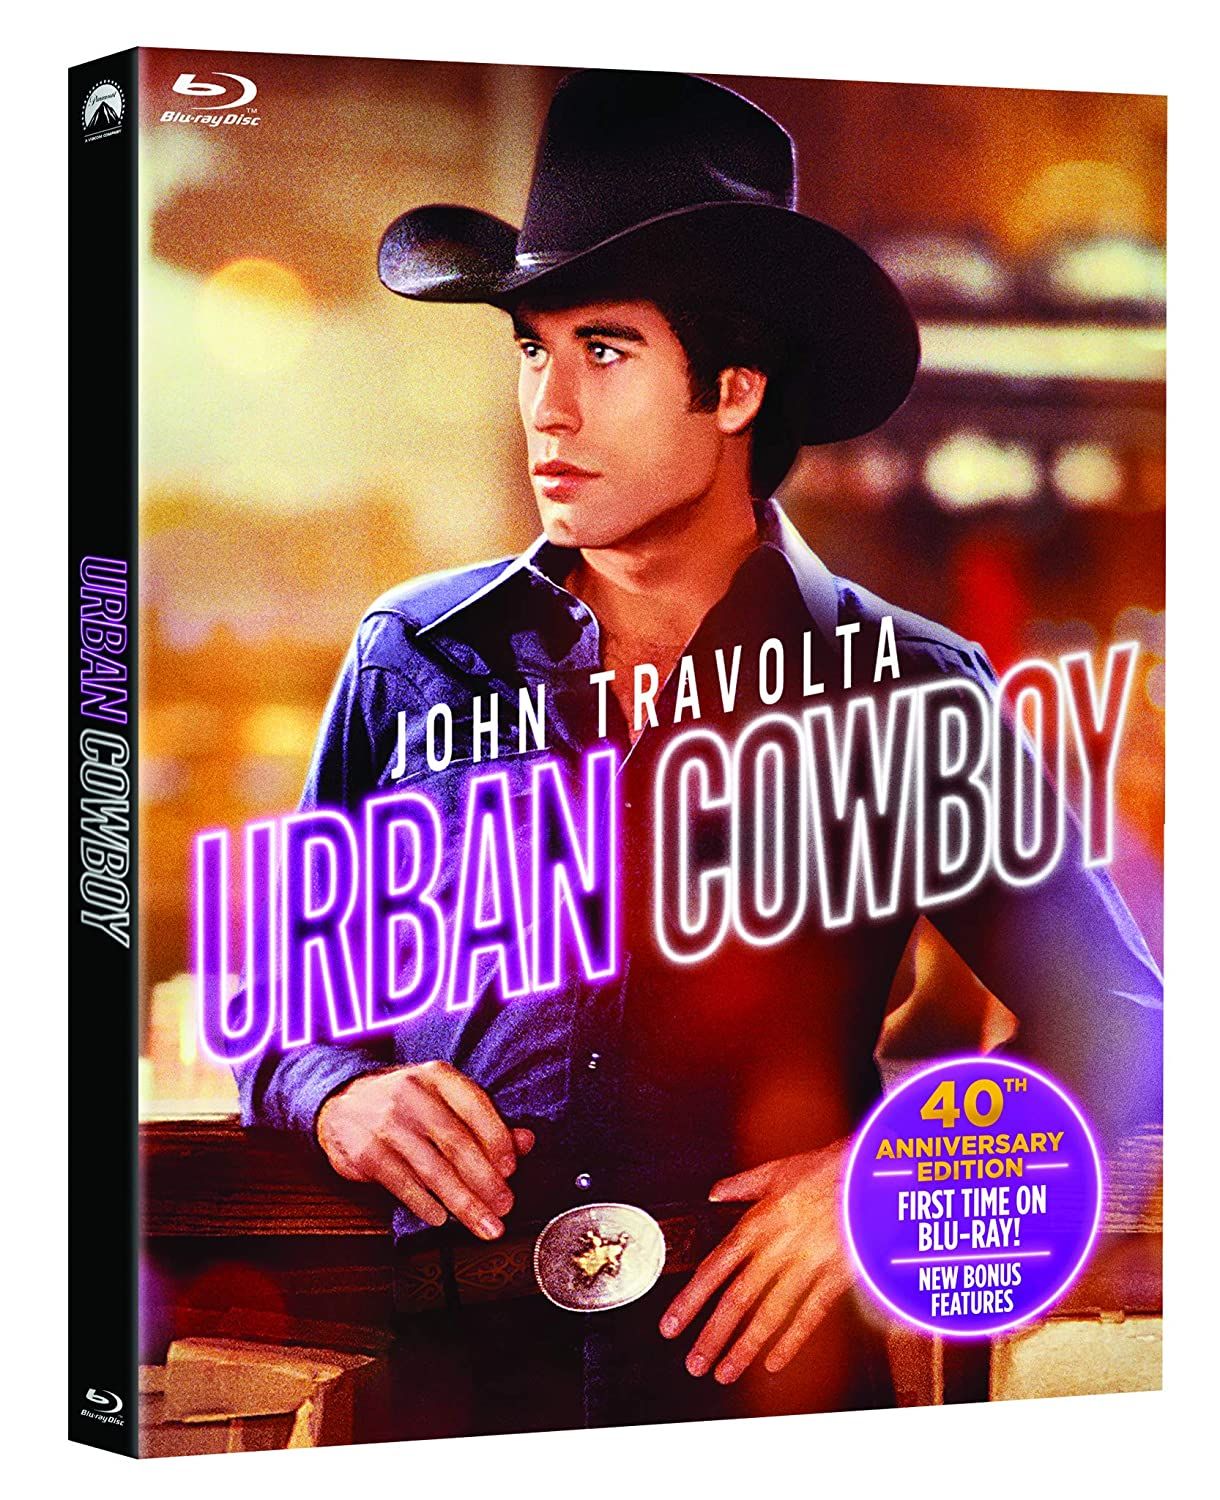 Urban Cowboy blu-ray 2020